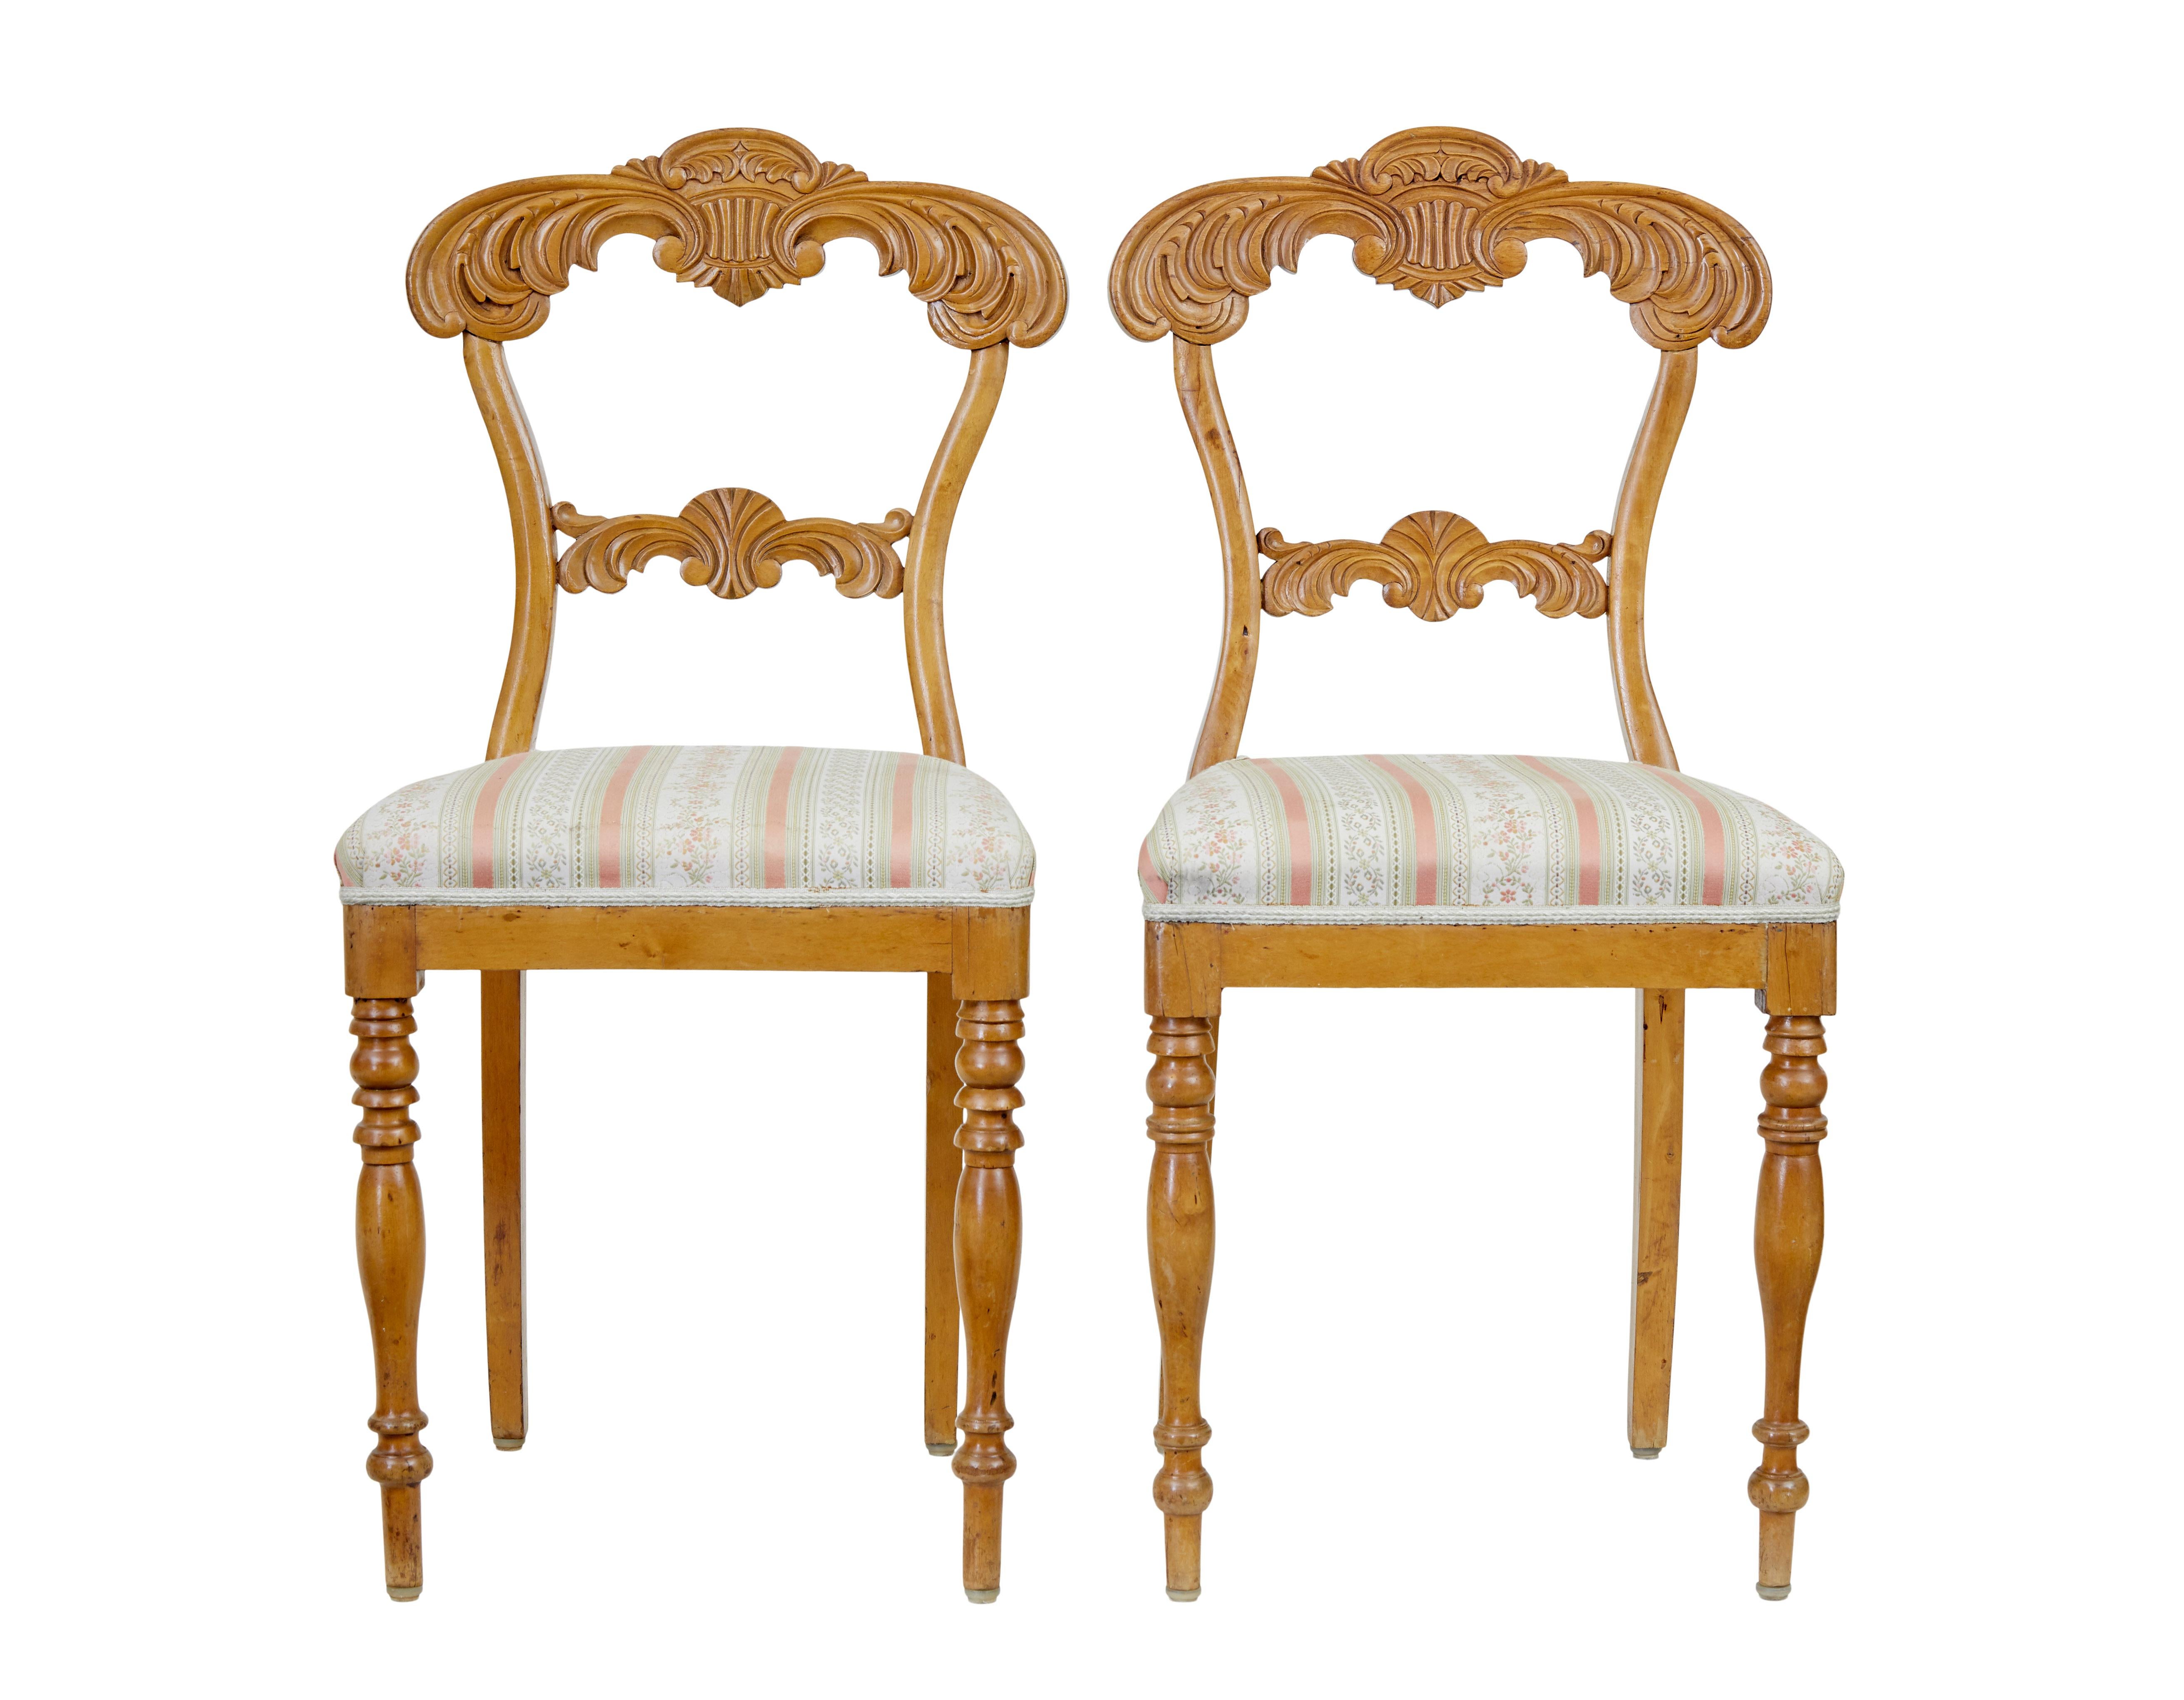 Paire de chaises d'appoint en bouleau suédois sculpté, vers 1920,

Dossier richement sculpté de rinceaux et de feuilles d'acanthe. Debout sur ses pattes avant tournées.

Très légères marques sur la sellerie et restaurations sur les